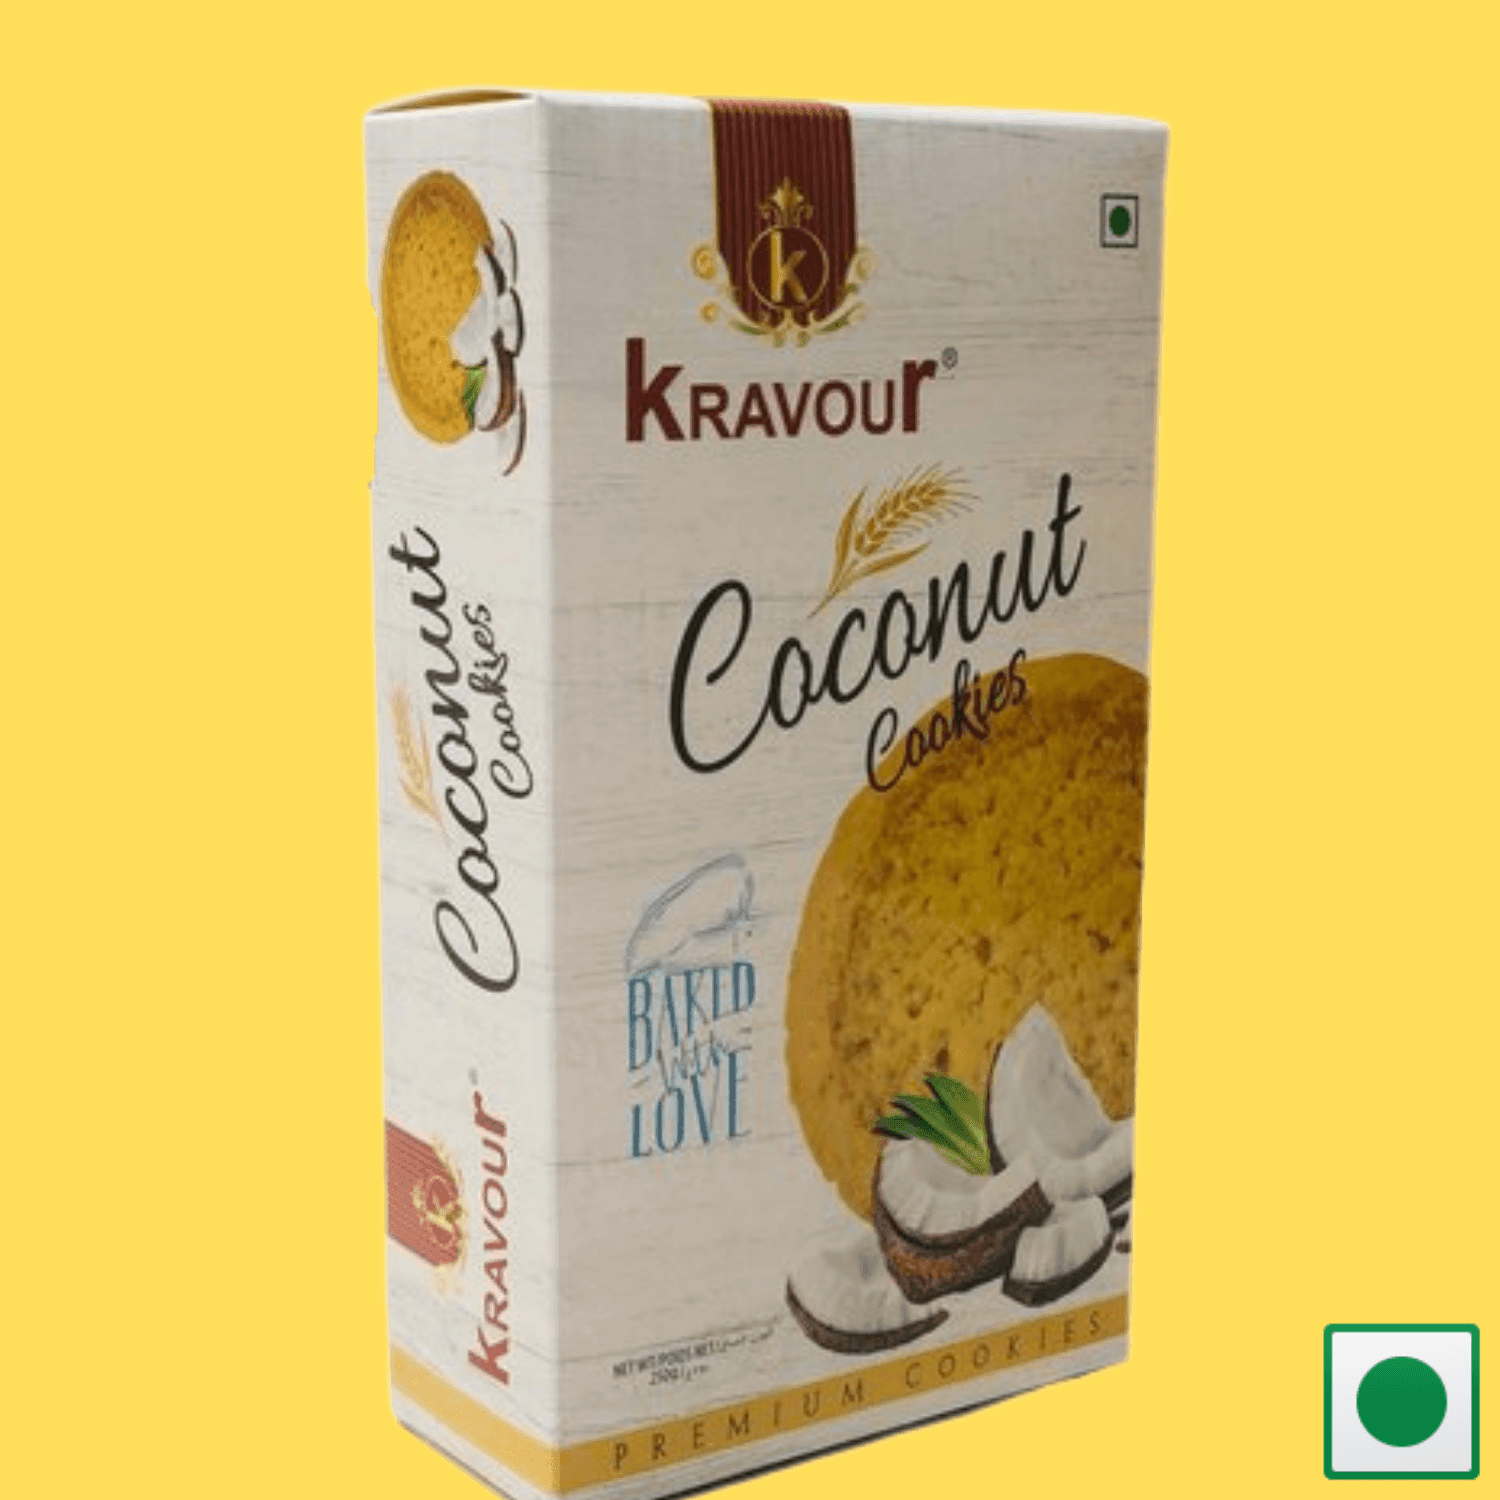 Kravour Coconut Cookies, 250g - Super 7 Mart